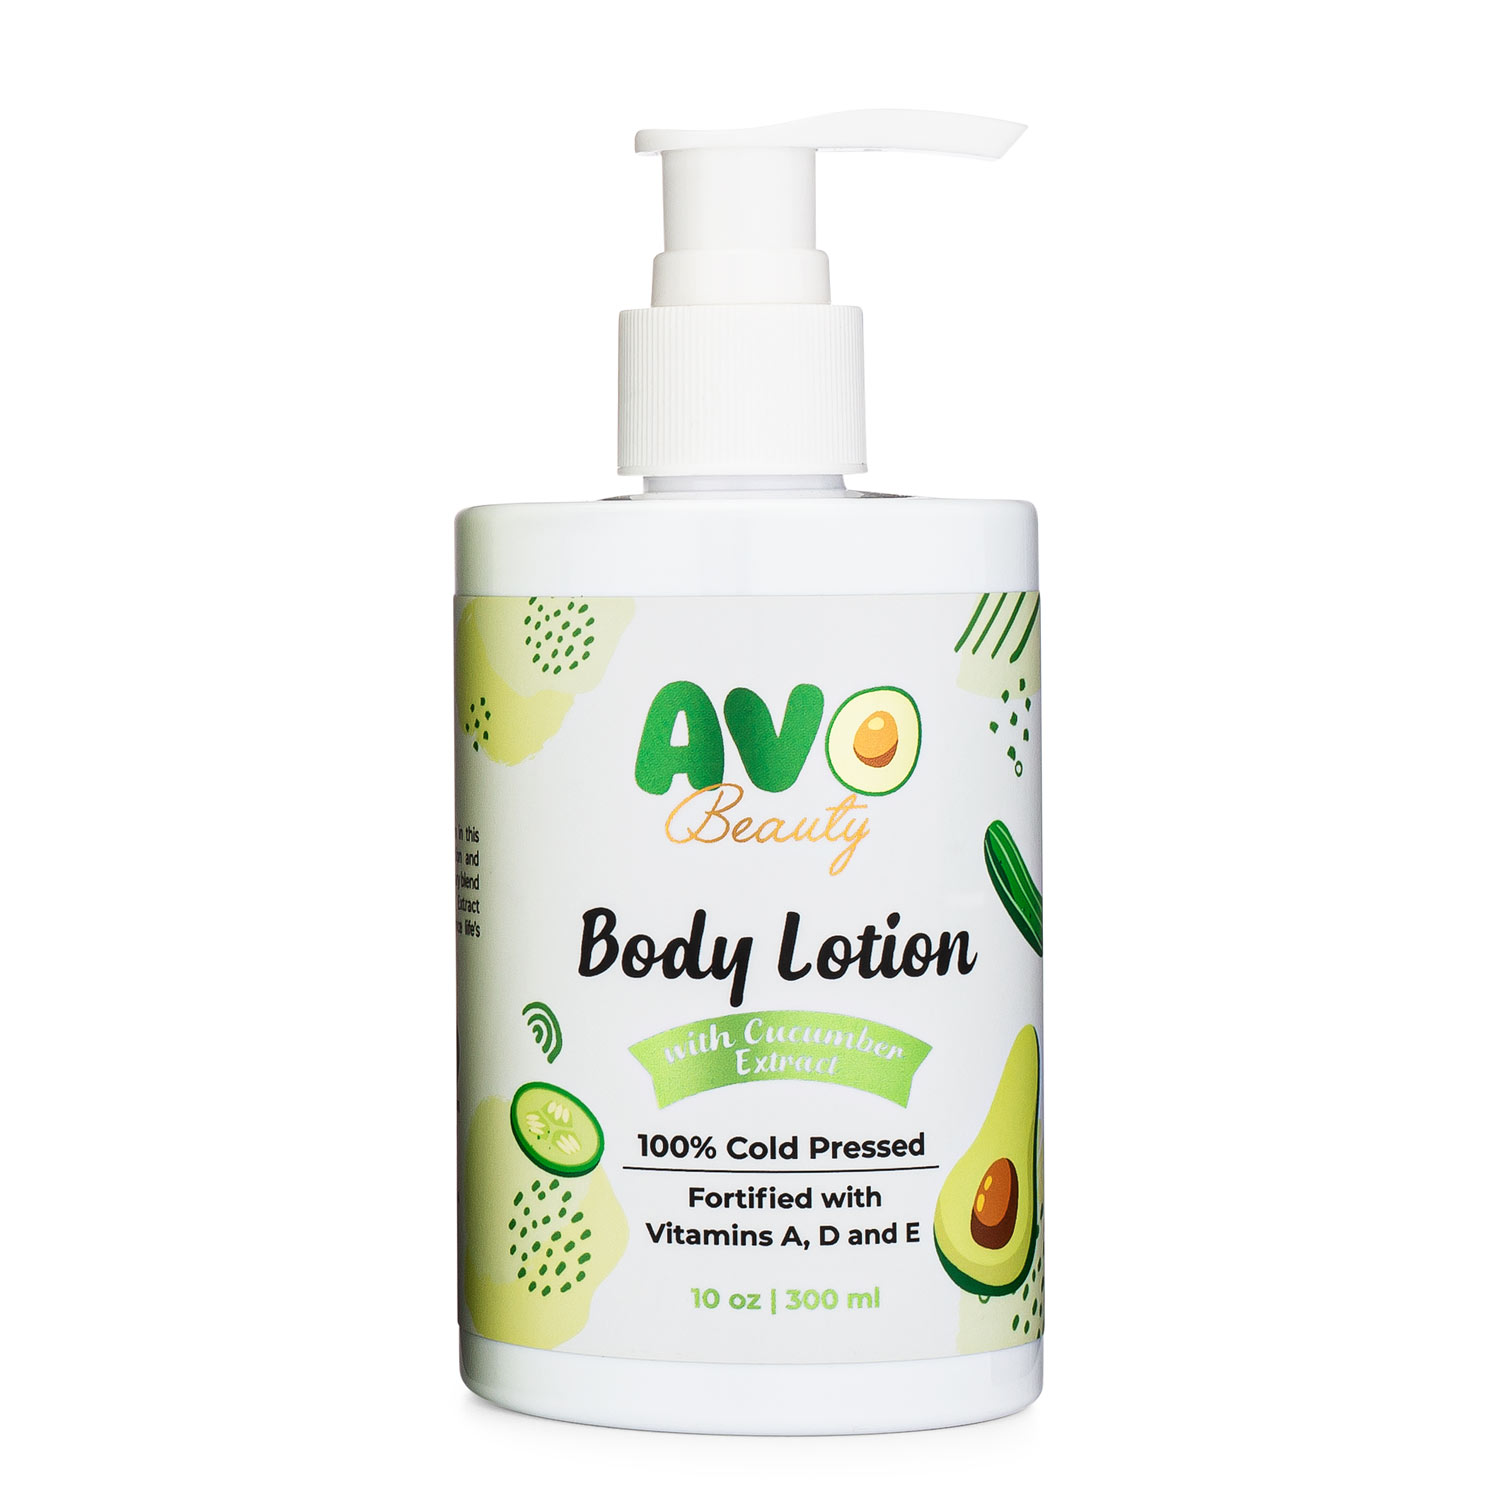 Avocado-Body-Lotion-Avo-Beauty